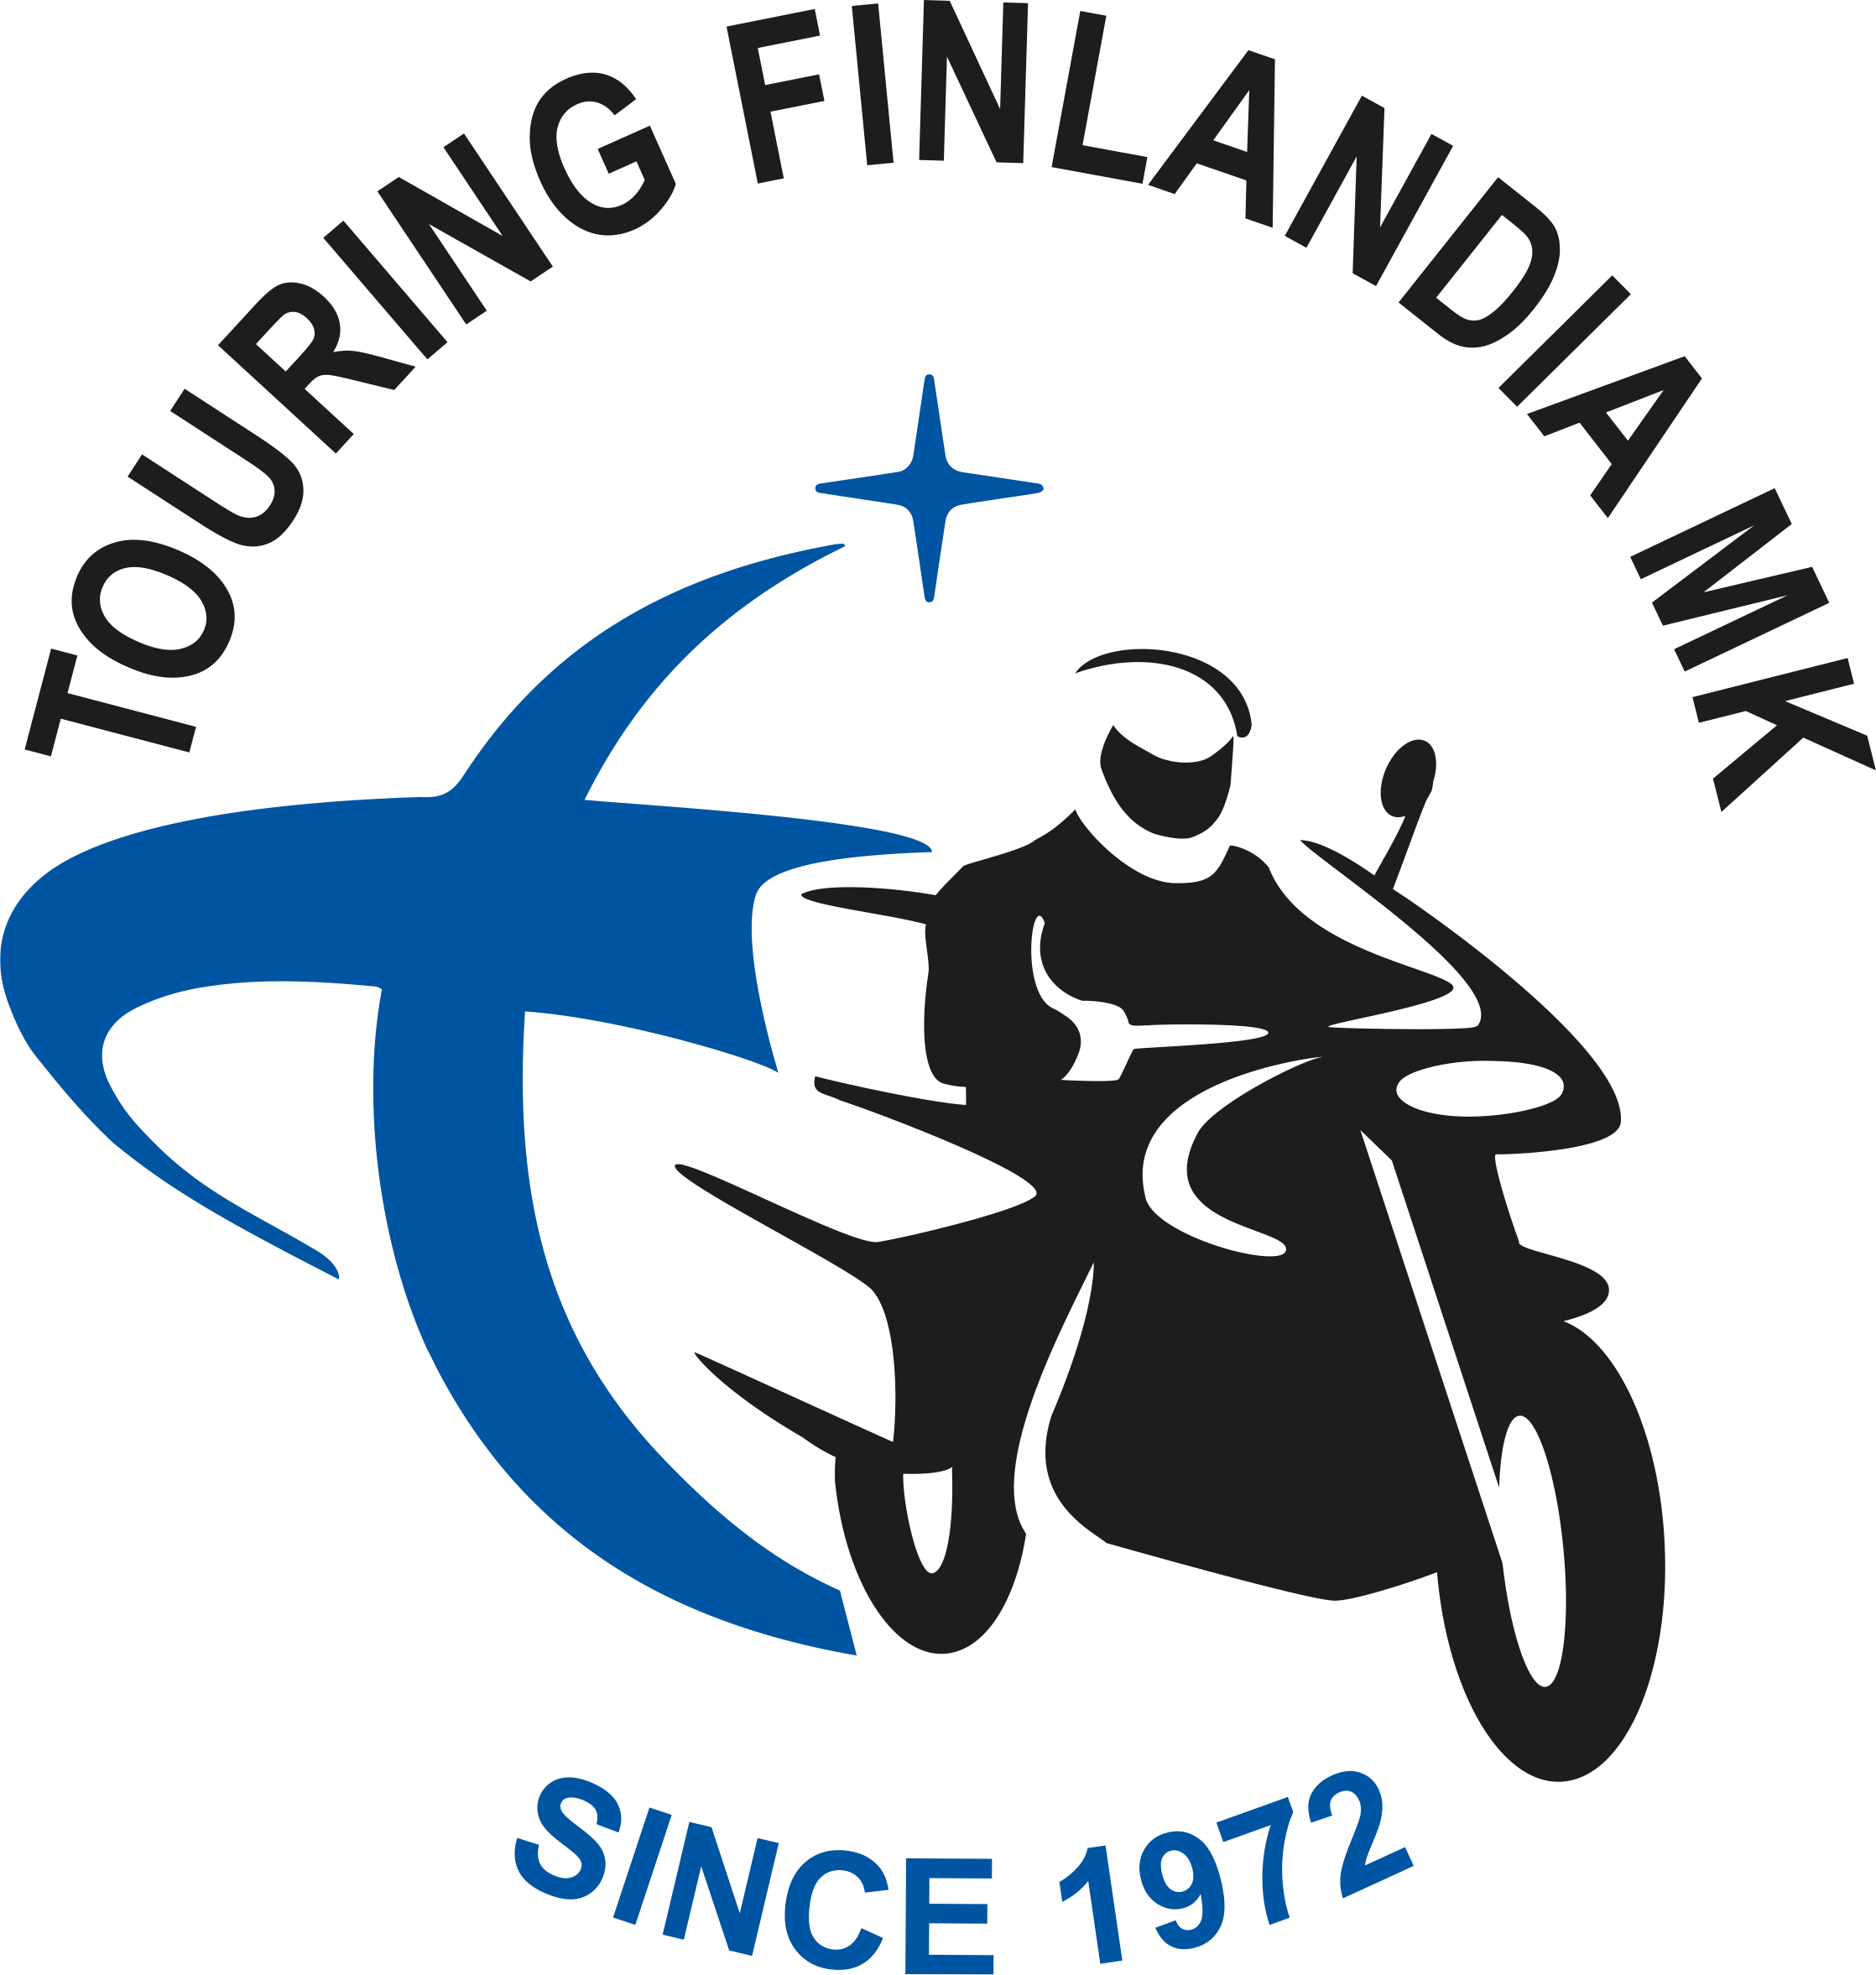 Touring Finlandia